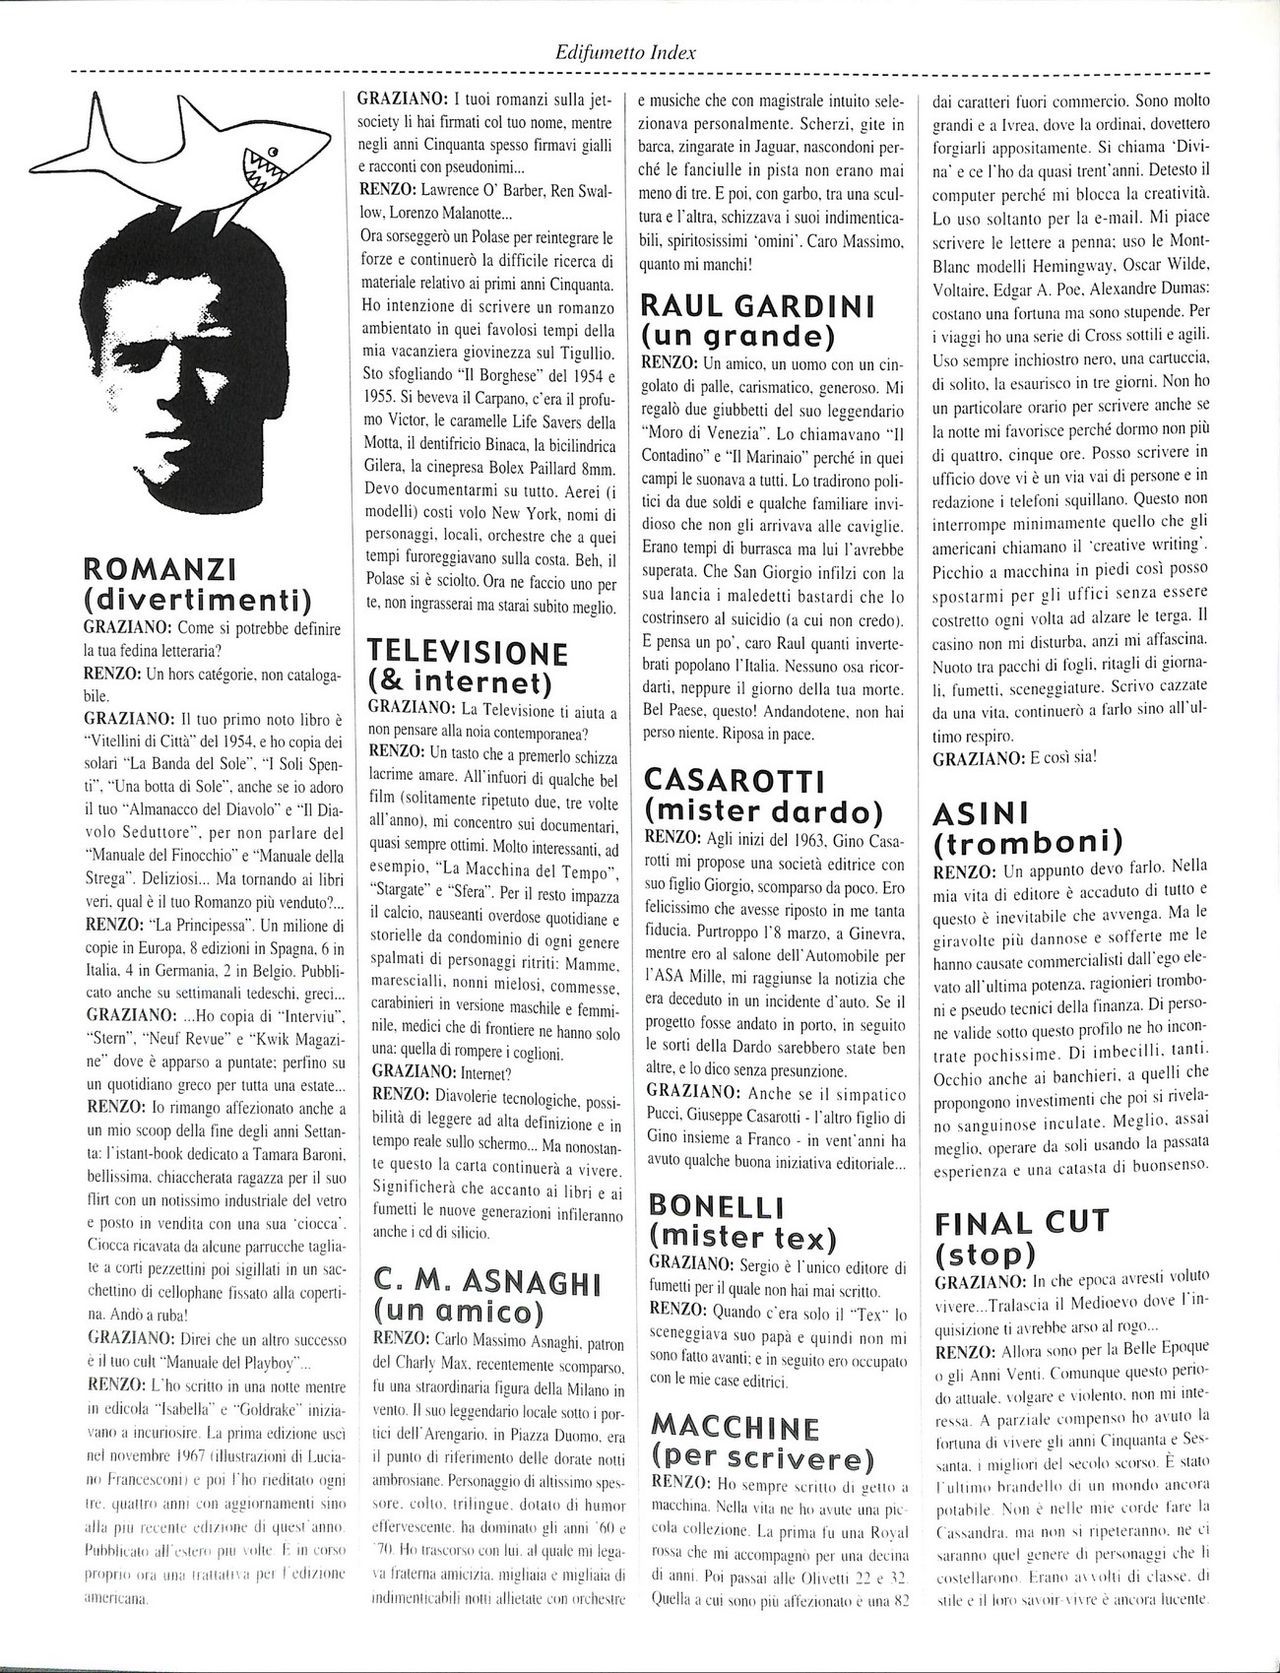 EdiFumetto index (Graziano Origa, 2002) [Italian] 15